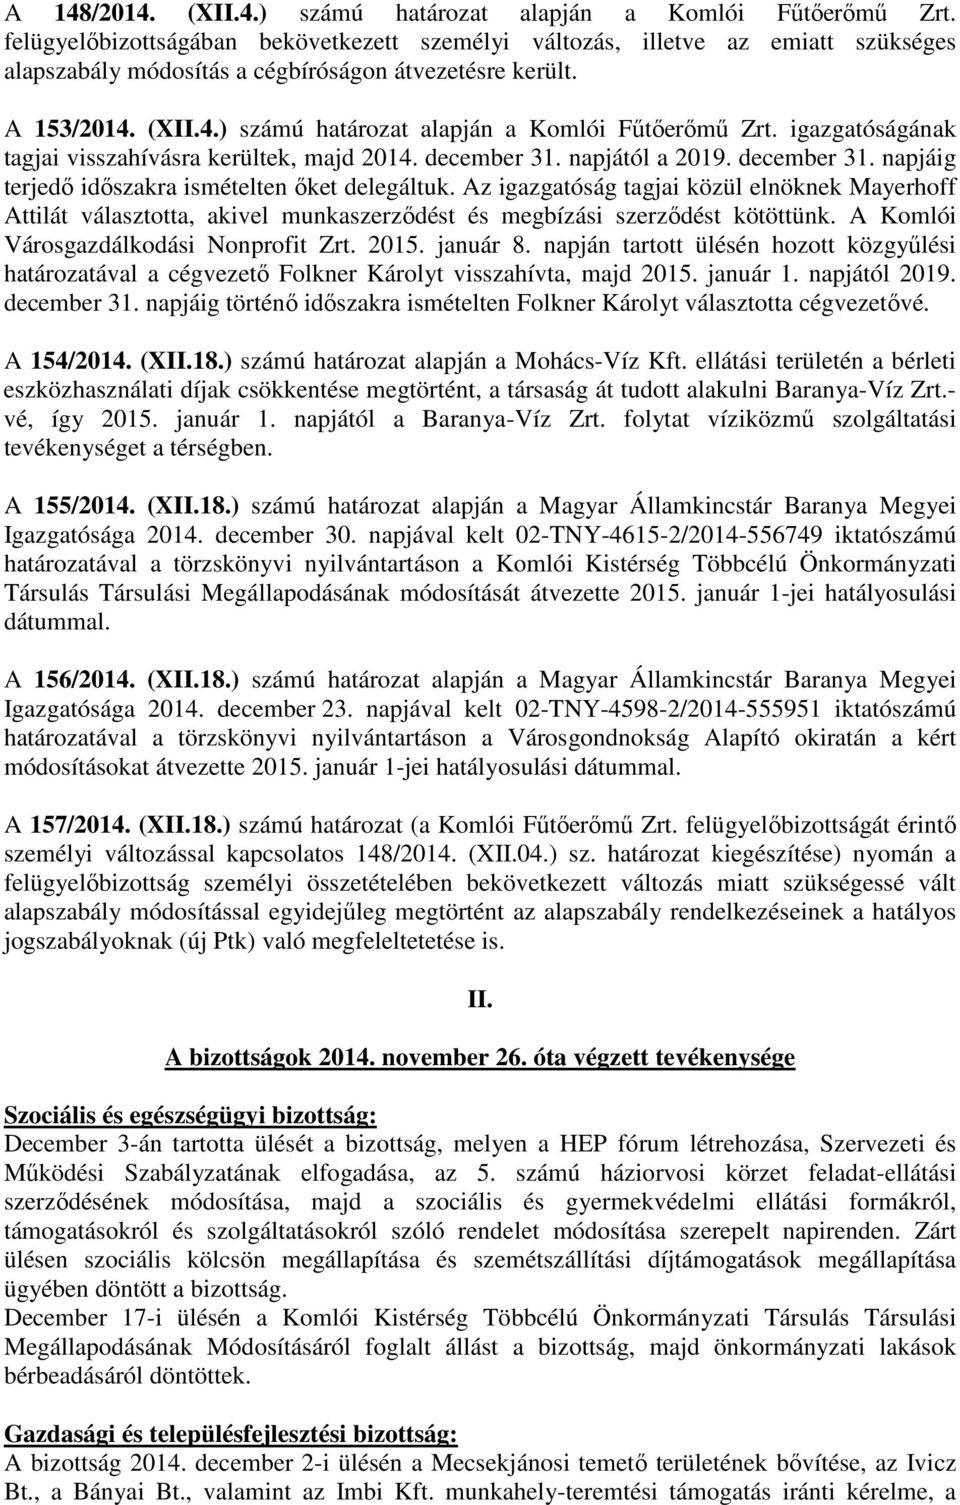 (XII.4.) számú határozat alapján a Komlói Fűtőerőmű Zrt. igazgatóságának tagjai visszahívásra kerültek, majd 2014. december 31. napjától a 2019. december 31. napjáig terjedő időszakra ismételten őket delegáltuk.